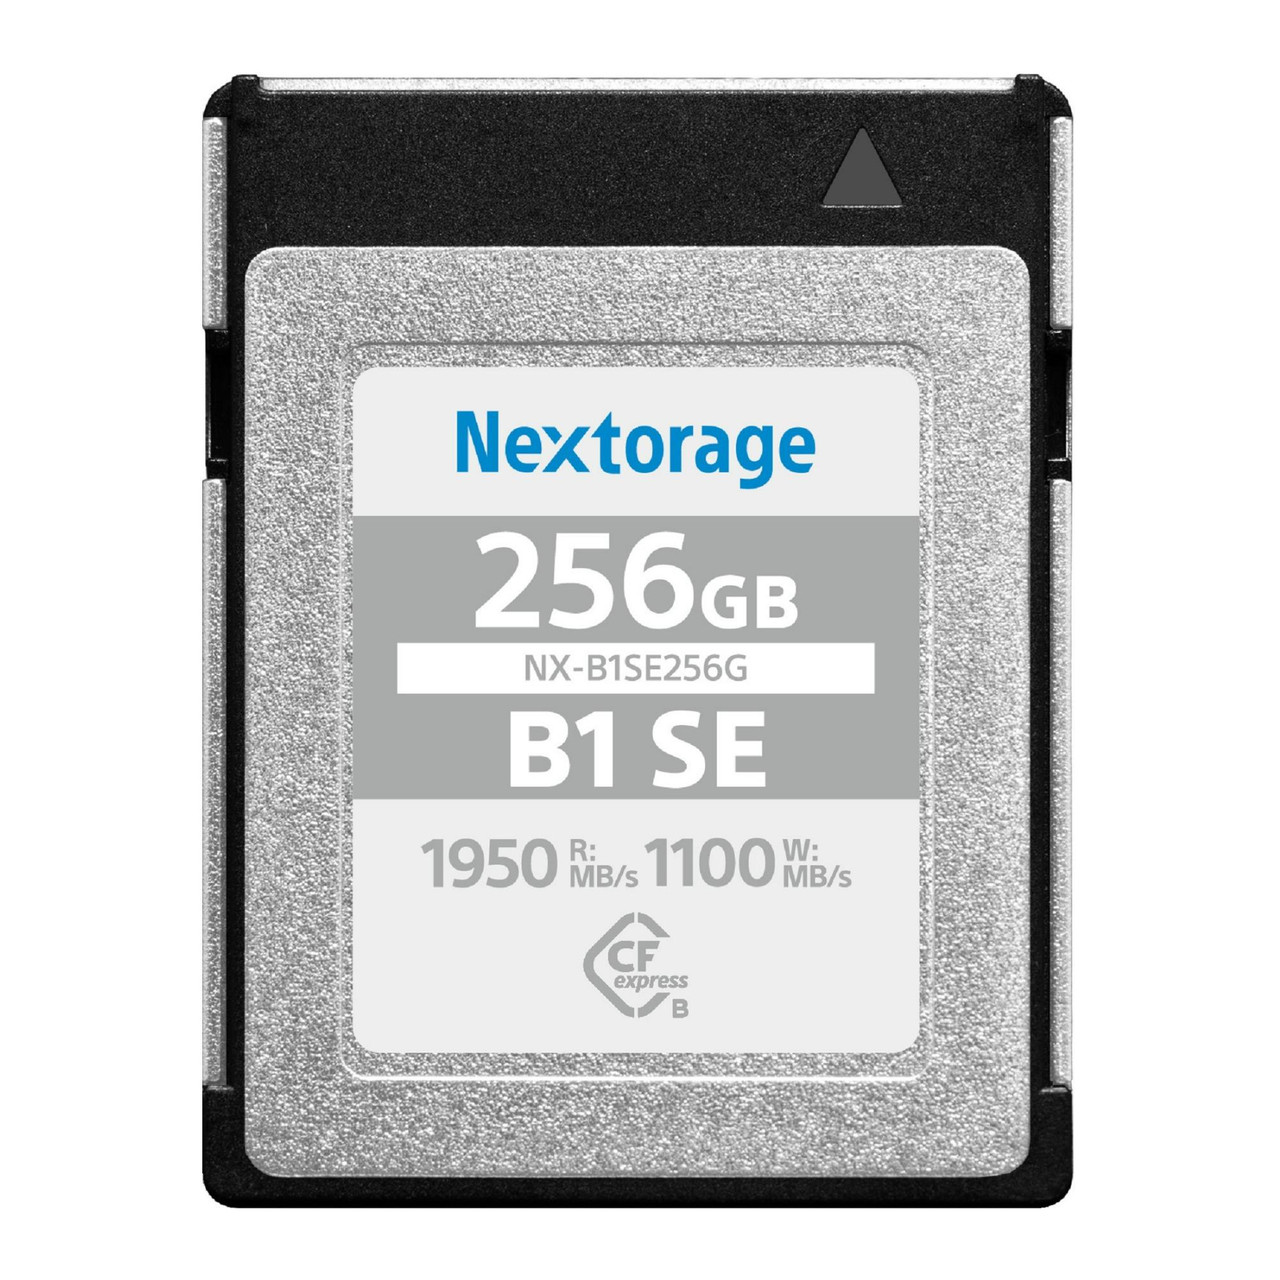 Nextorage NX-B1SE256G Cfexpress Card 256gb Type B B1 Se Series Max  1950r/1100w Mb/s